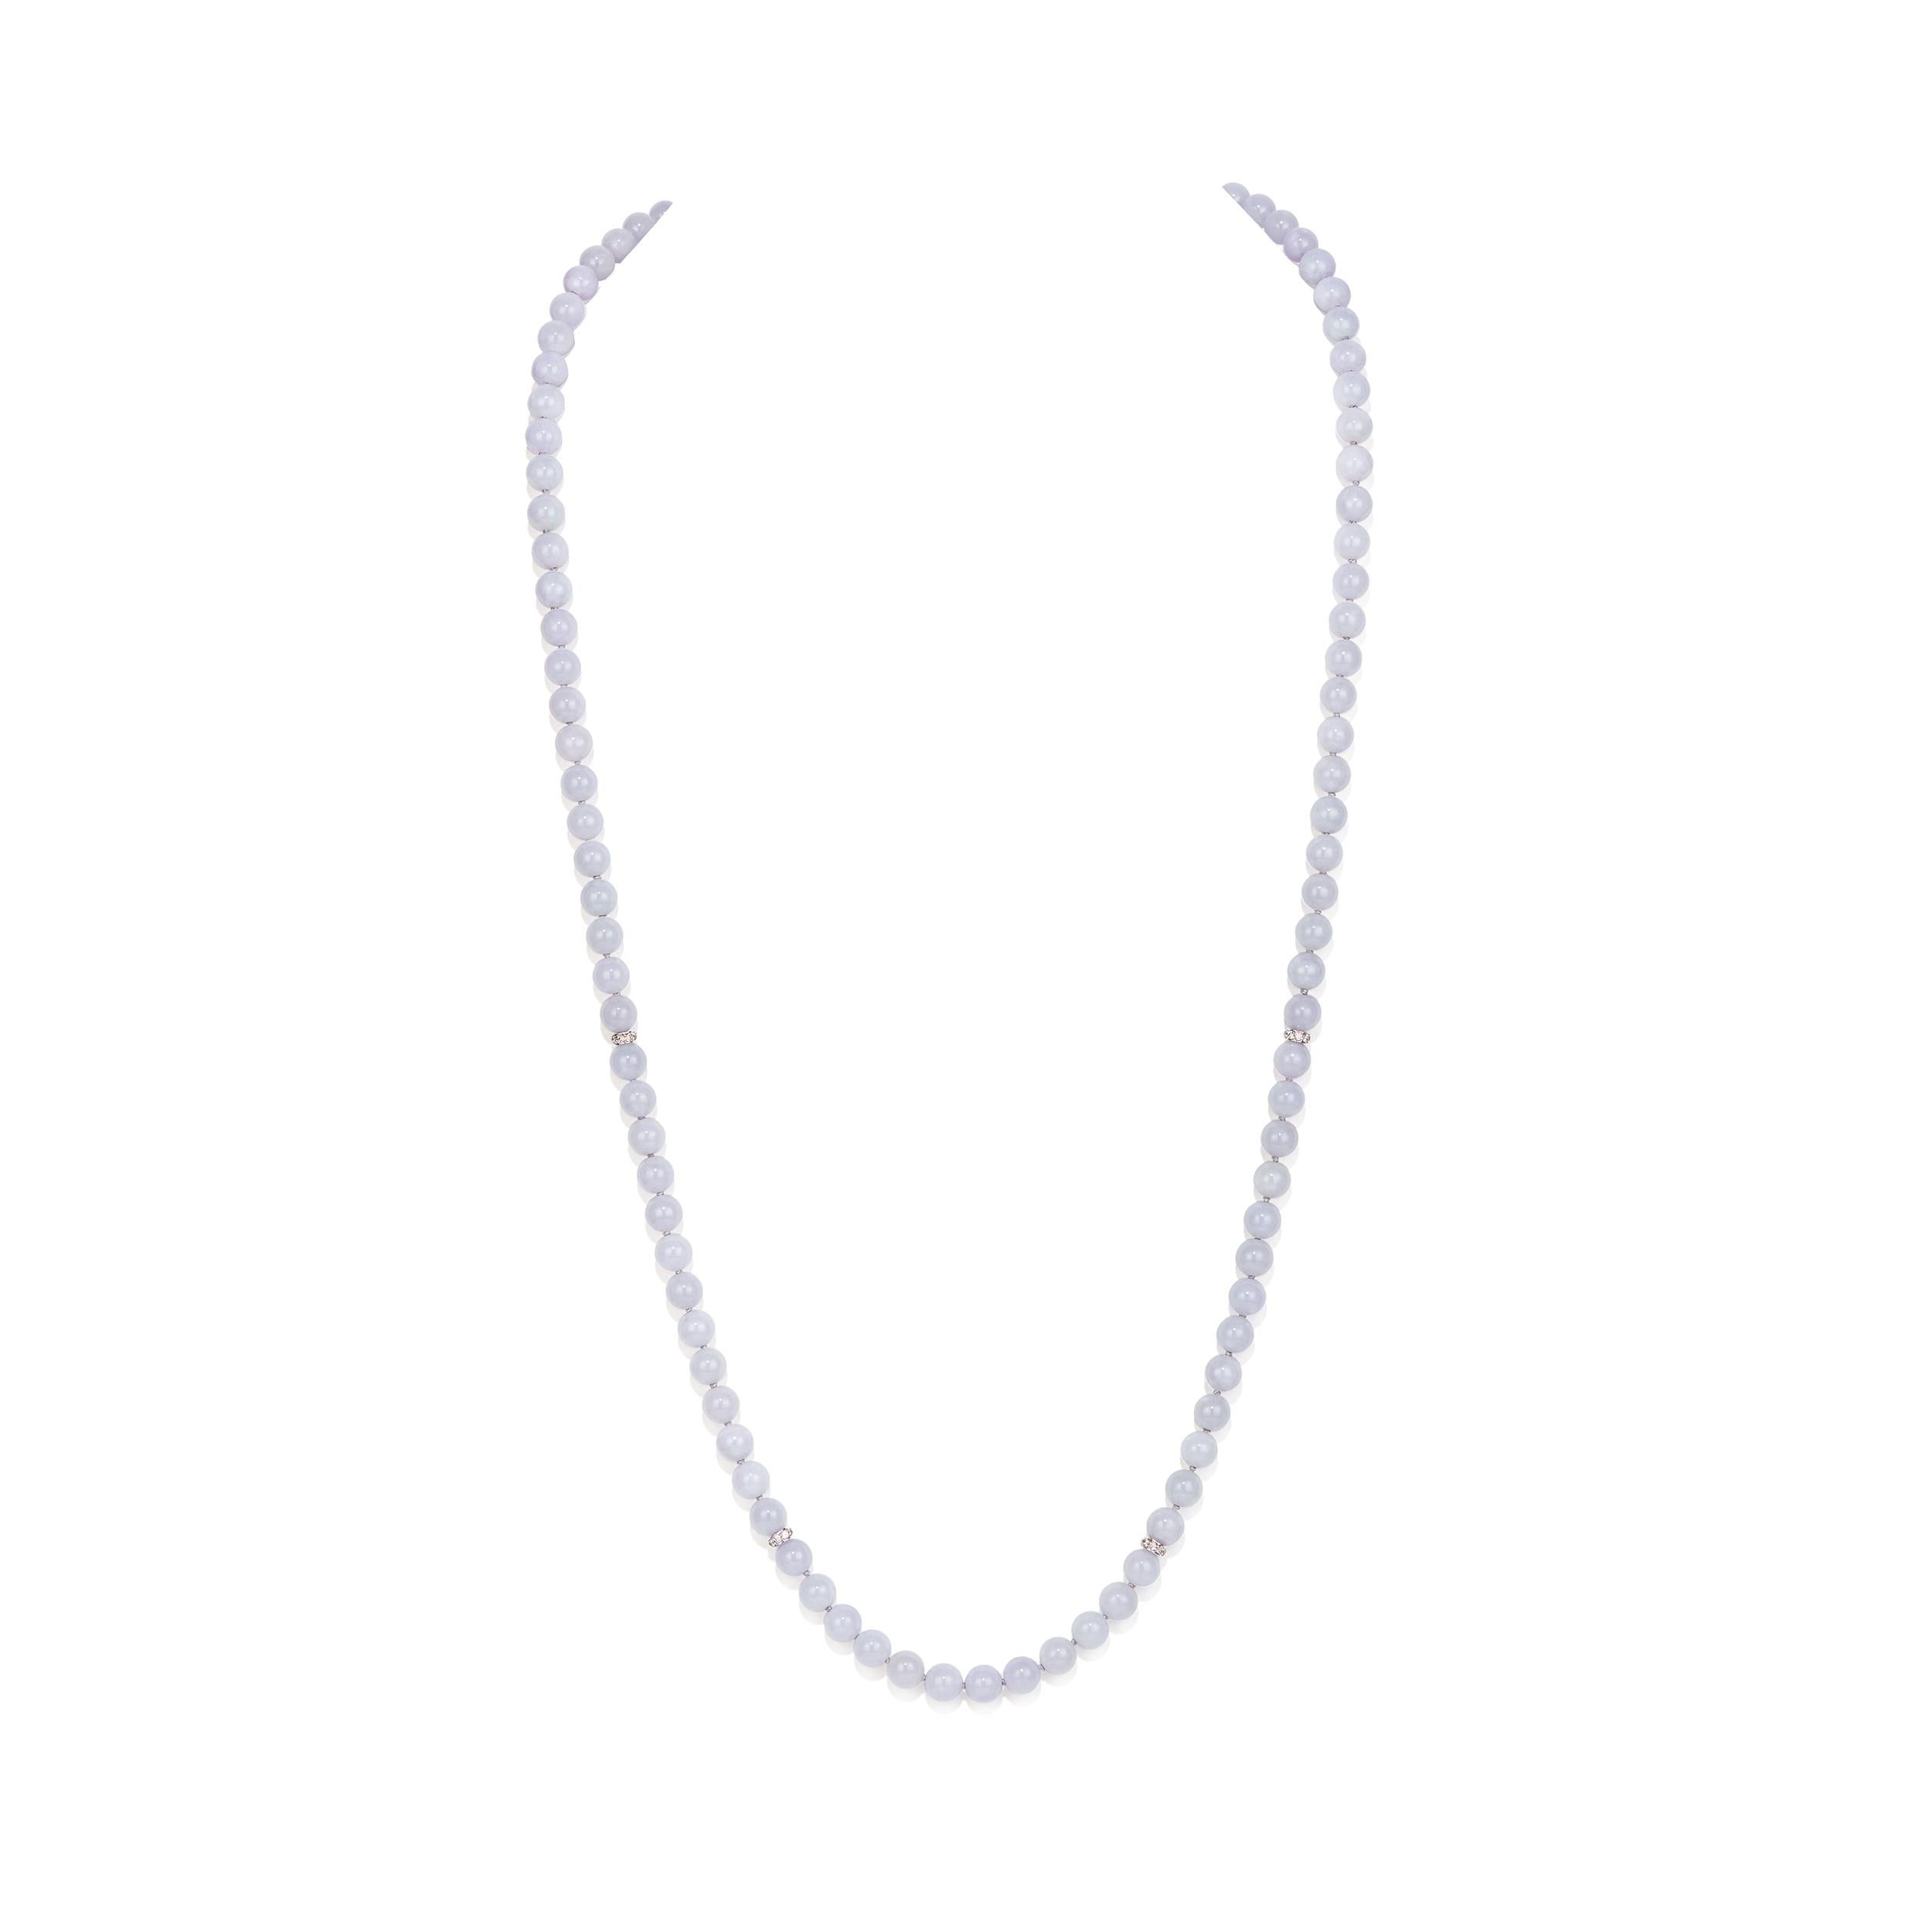 Description générale :

6.perles rondes en jade lavande 5-7 mm
    •Nombre total de perles de 104

Entretoises de diamant rondelle d'éternité
     •5.5 mm 
     •0.16 Carat 
     •or blanc 18 carats 

Longueur totale : 32 pouces
Poids : 72